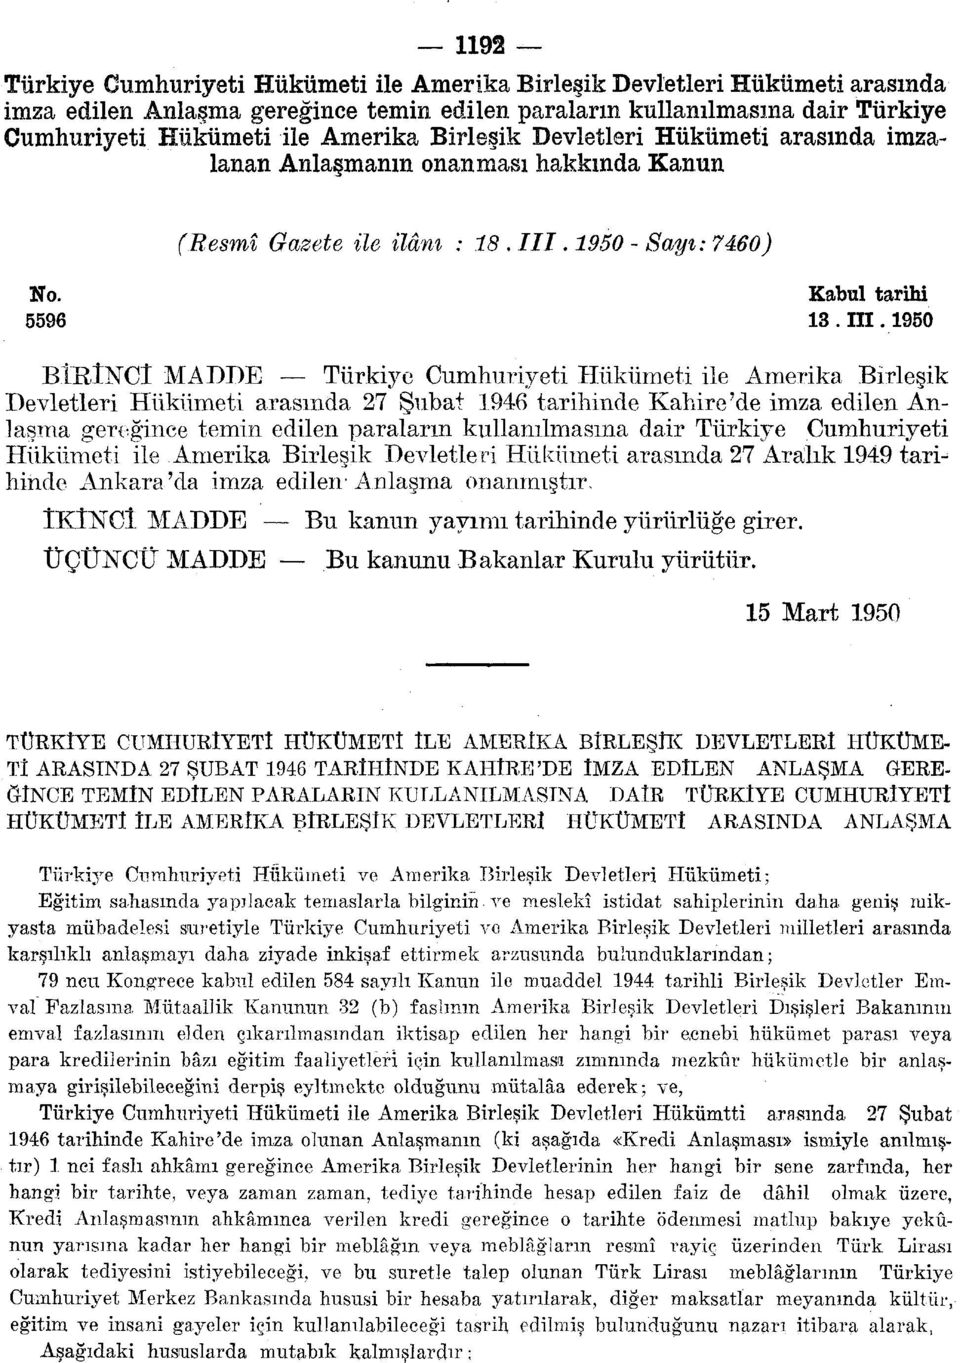 1950 BİRÎNCÎ MADDE Türkiye Cumhuriyeti Hükümeti ile Amerika Birleşik Devletleri Hükümeti arasında 27 Şubat 1946 tarihinde Kahire'de imza edilen Anlaşma gereğince temin edilen paraların kullanılmasına